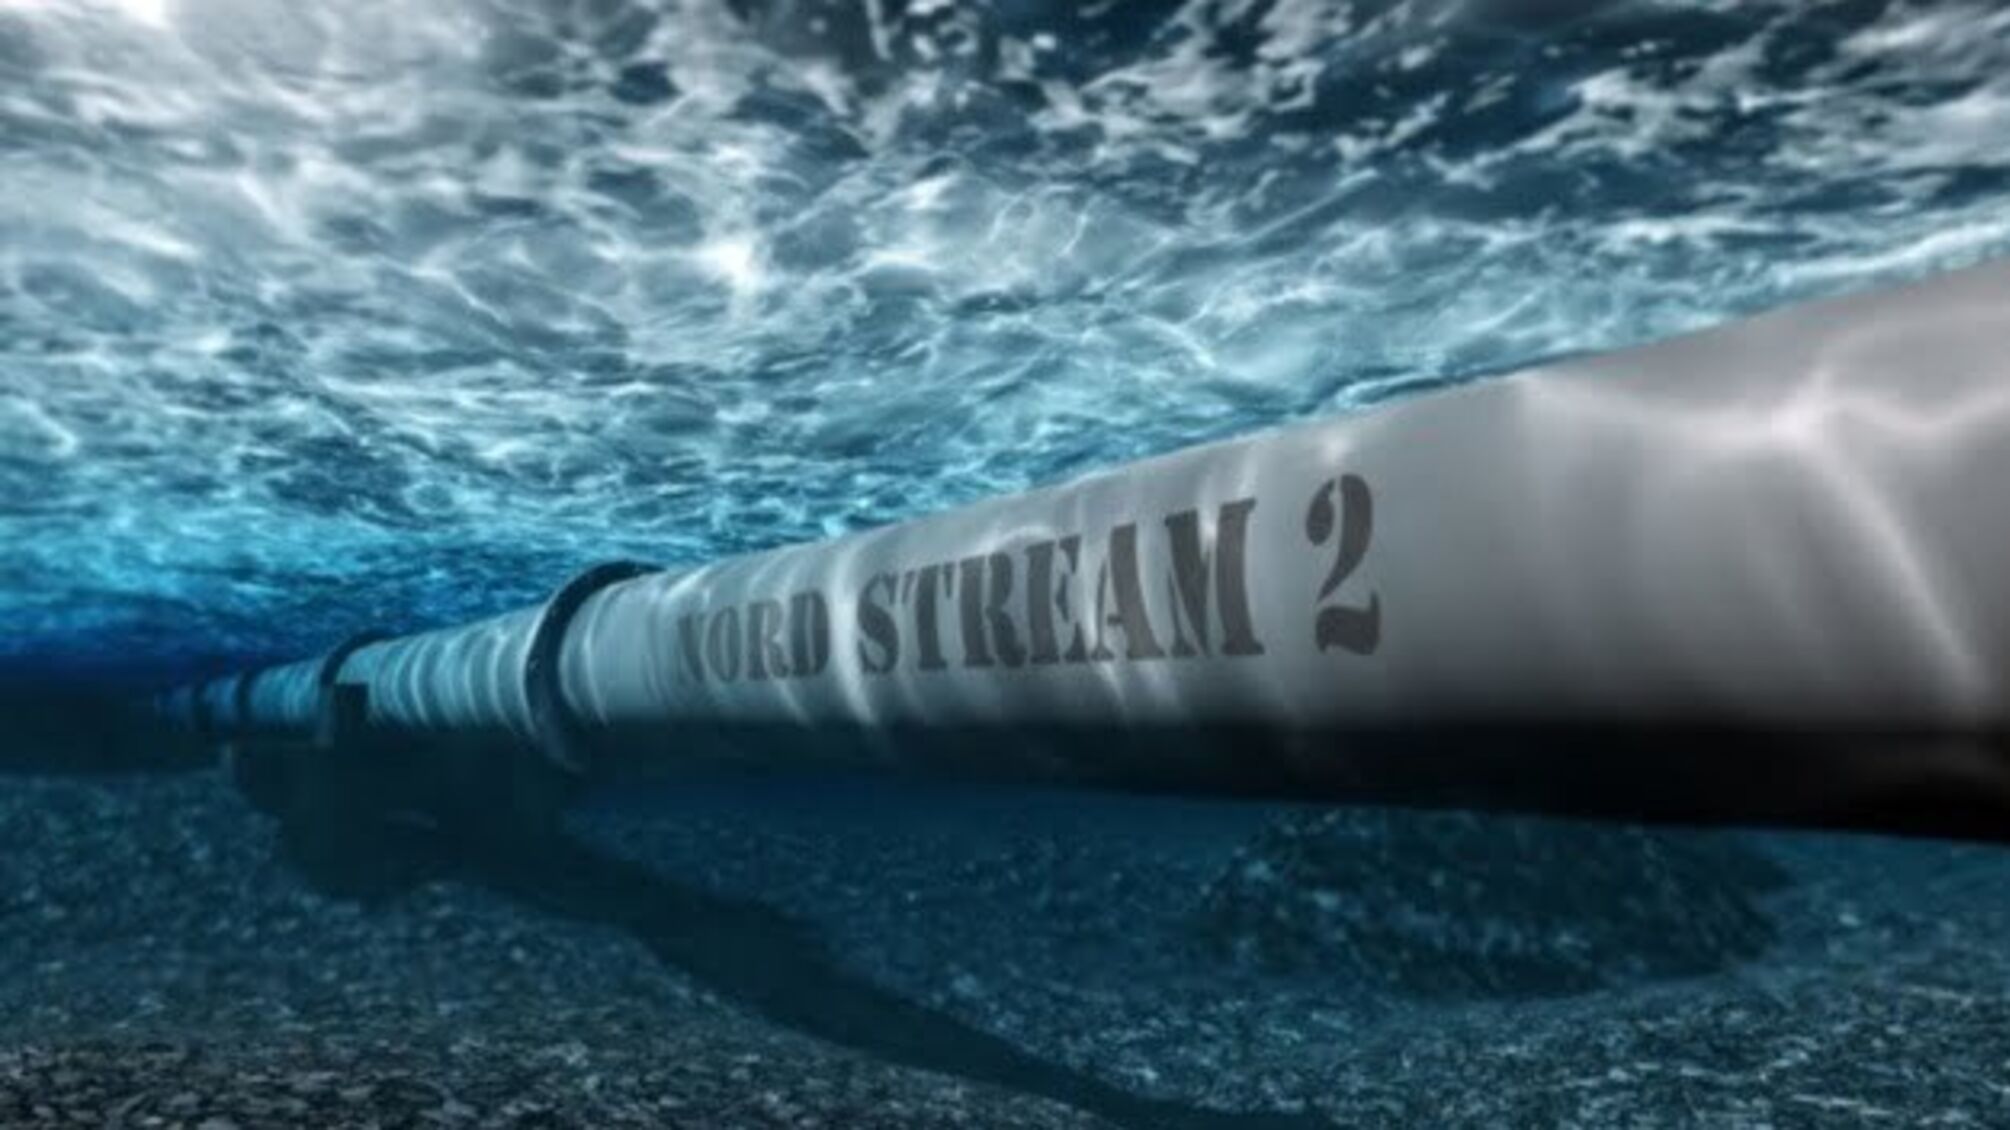 Норвезька компанія відмовилася сертифікувати Nord Stream 2